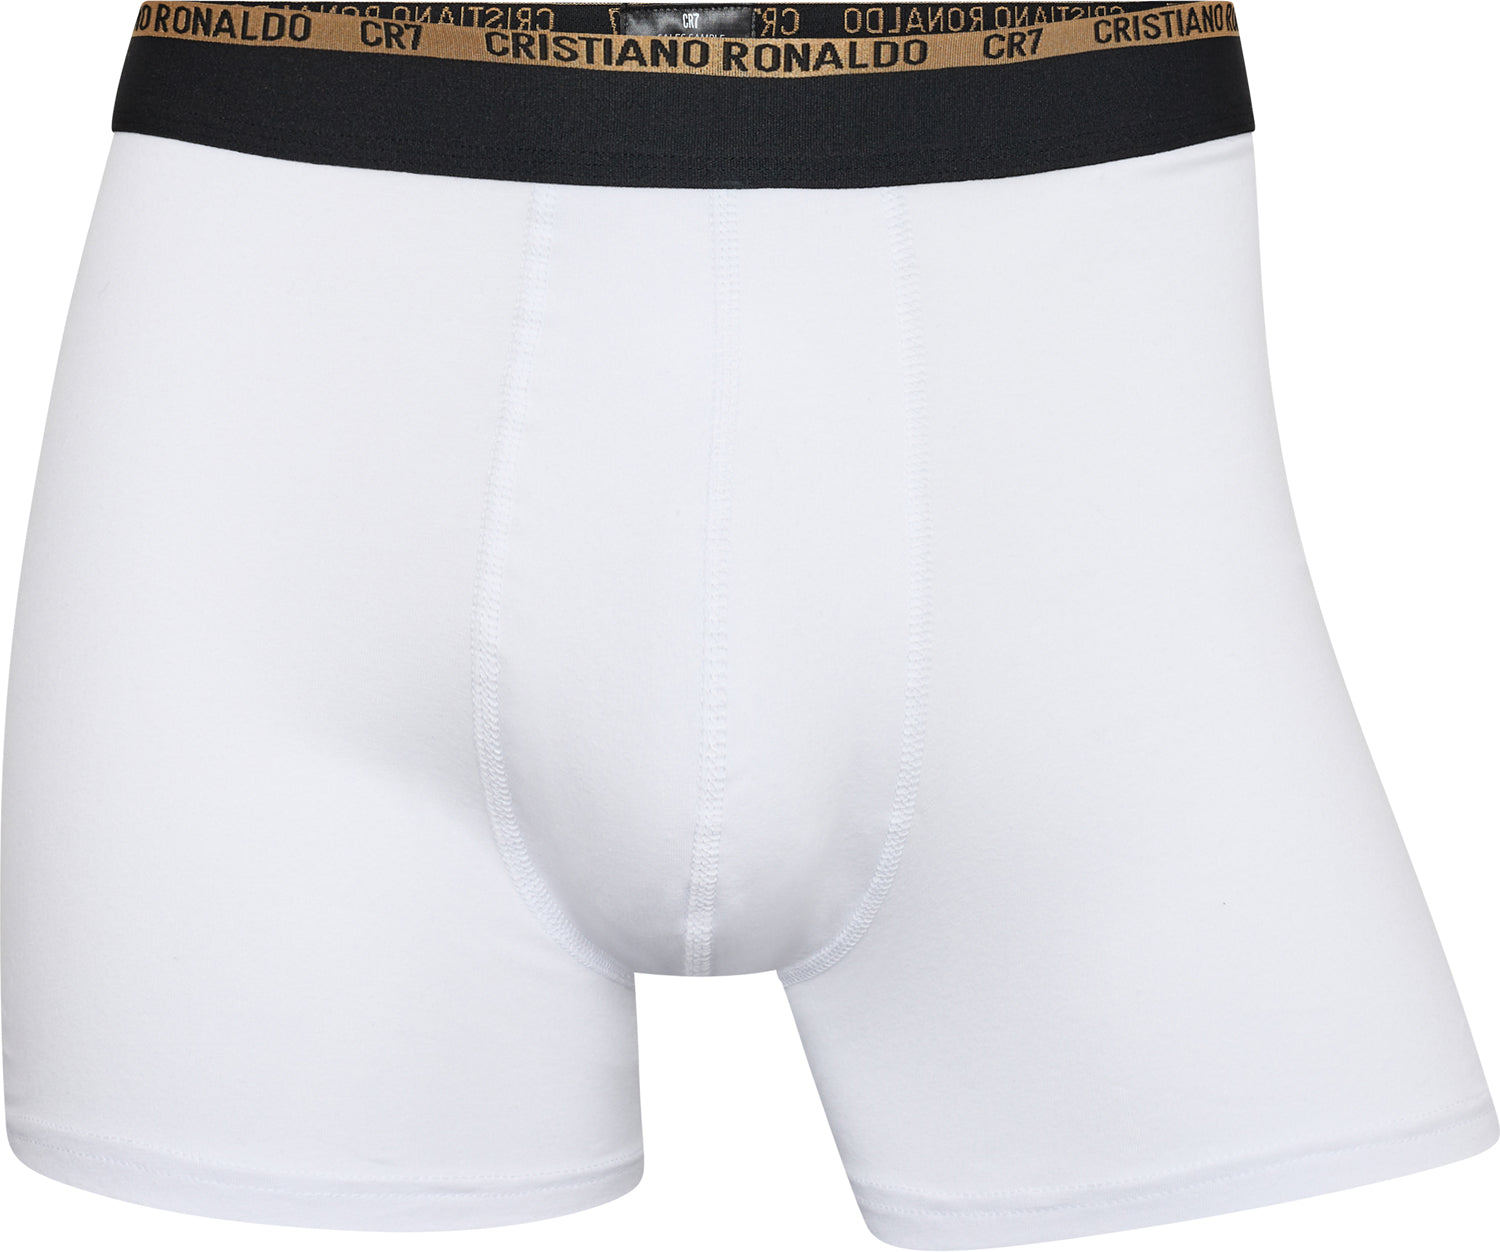 Cristiano Ronaldo CR7 3-Pack Boxer Briefs B/G/W Men's Underwear 8100-49-633